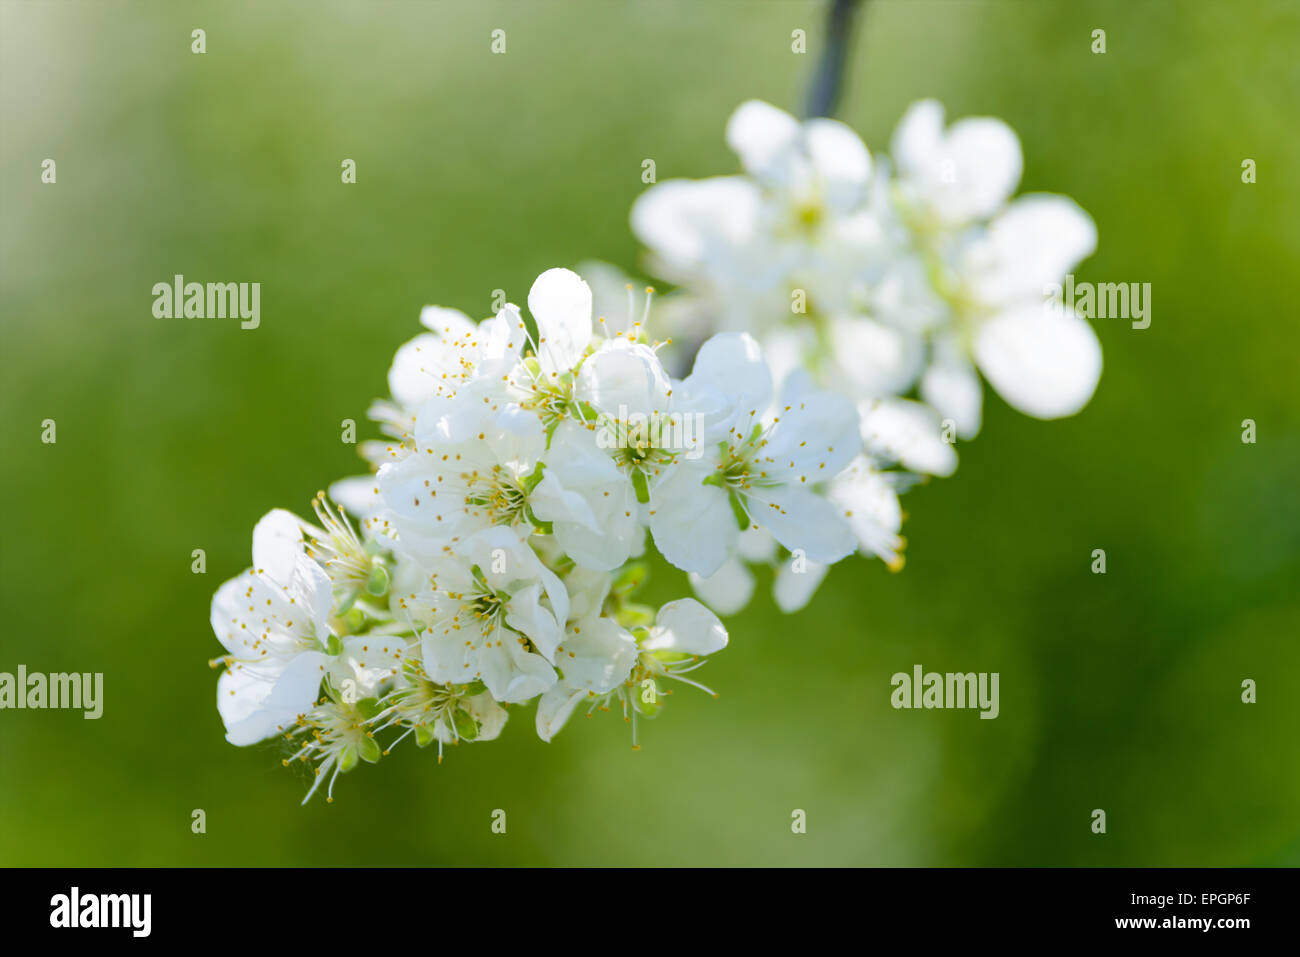 Blumen: Blühender Apfelbaum, close-up erschossen, grünen Hintergrund unscharf Stockfoto